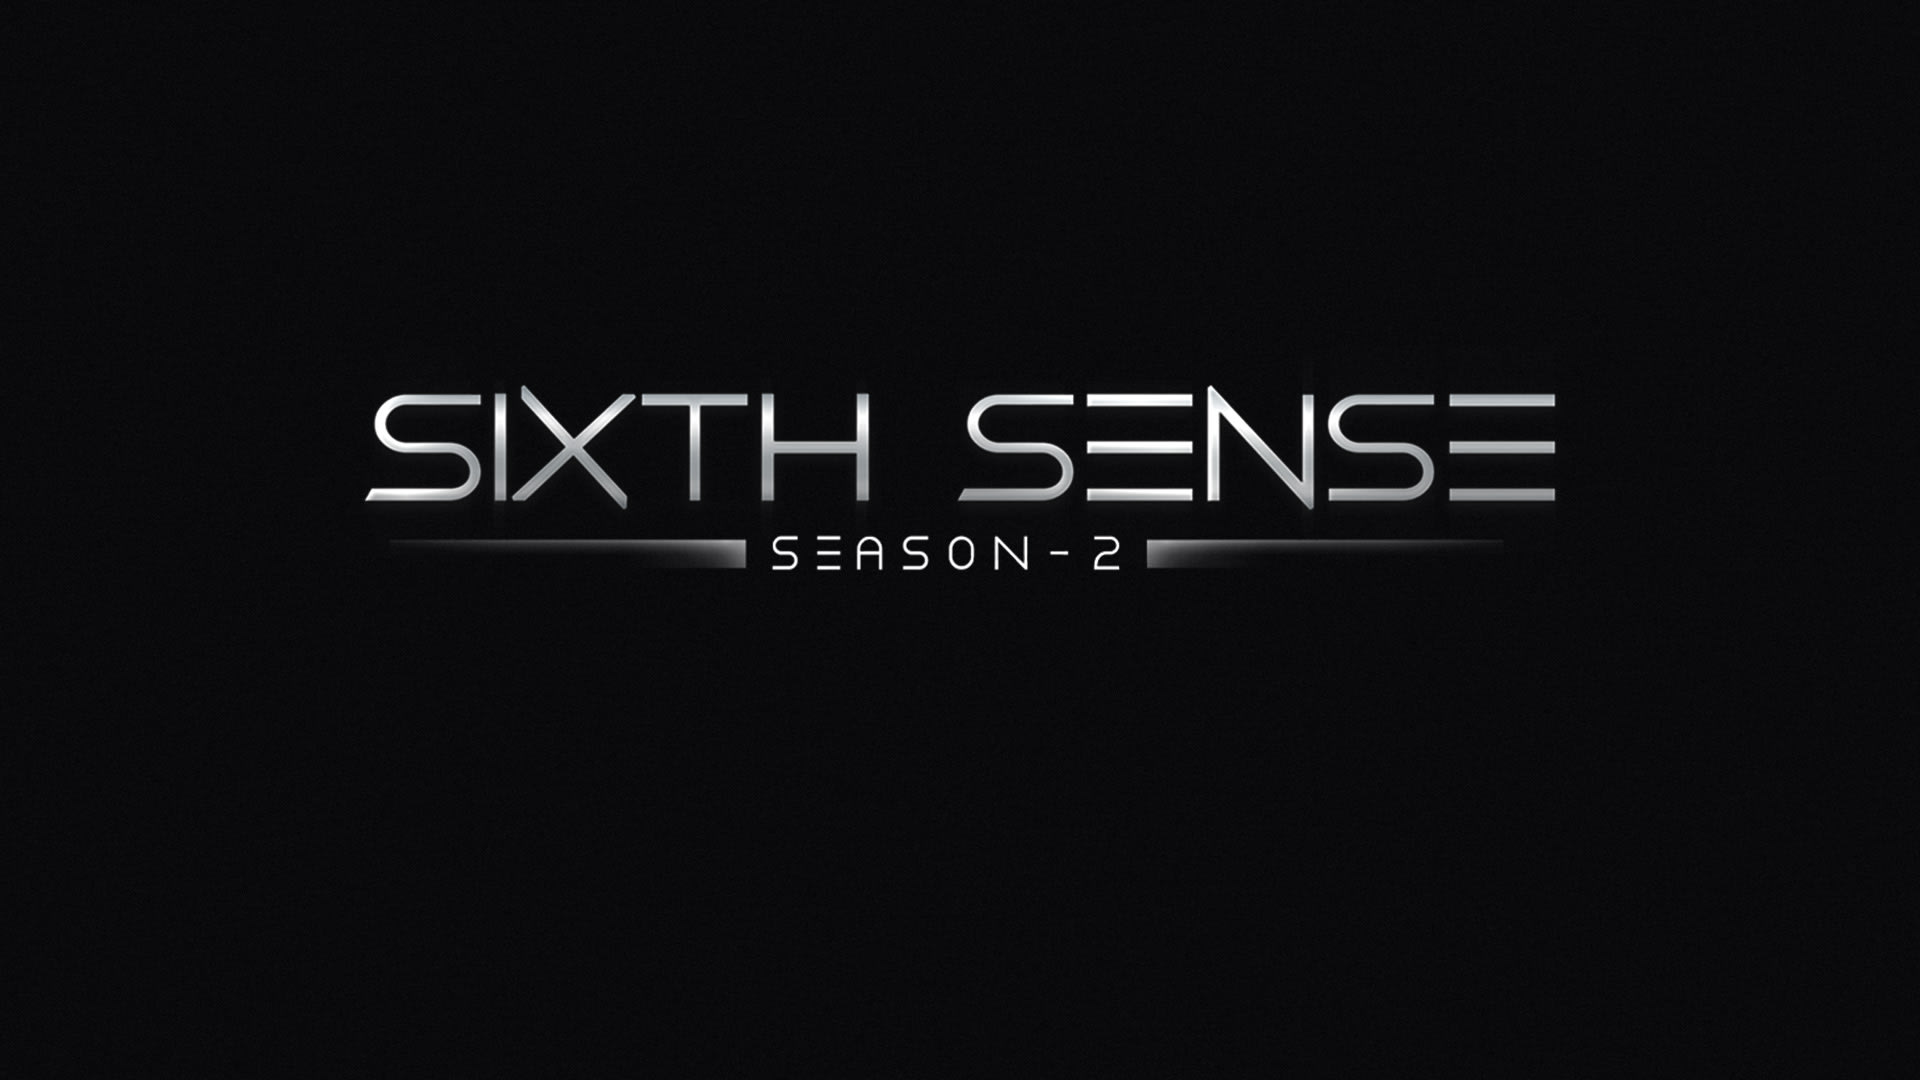 Sixth sense season 2 watch online